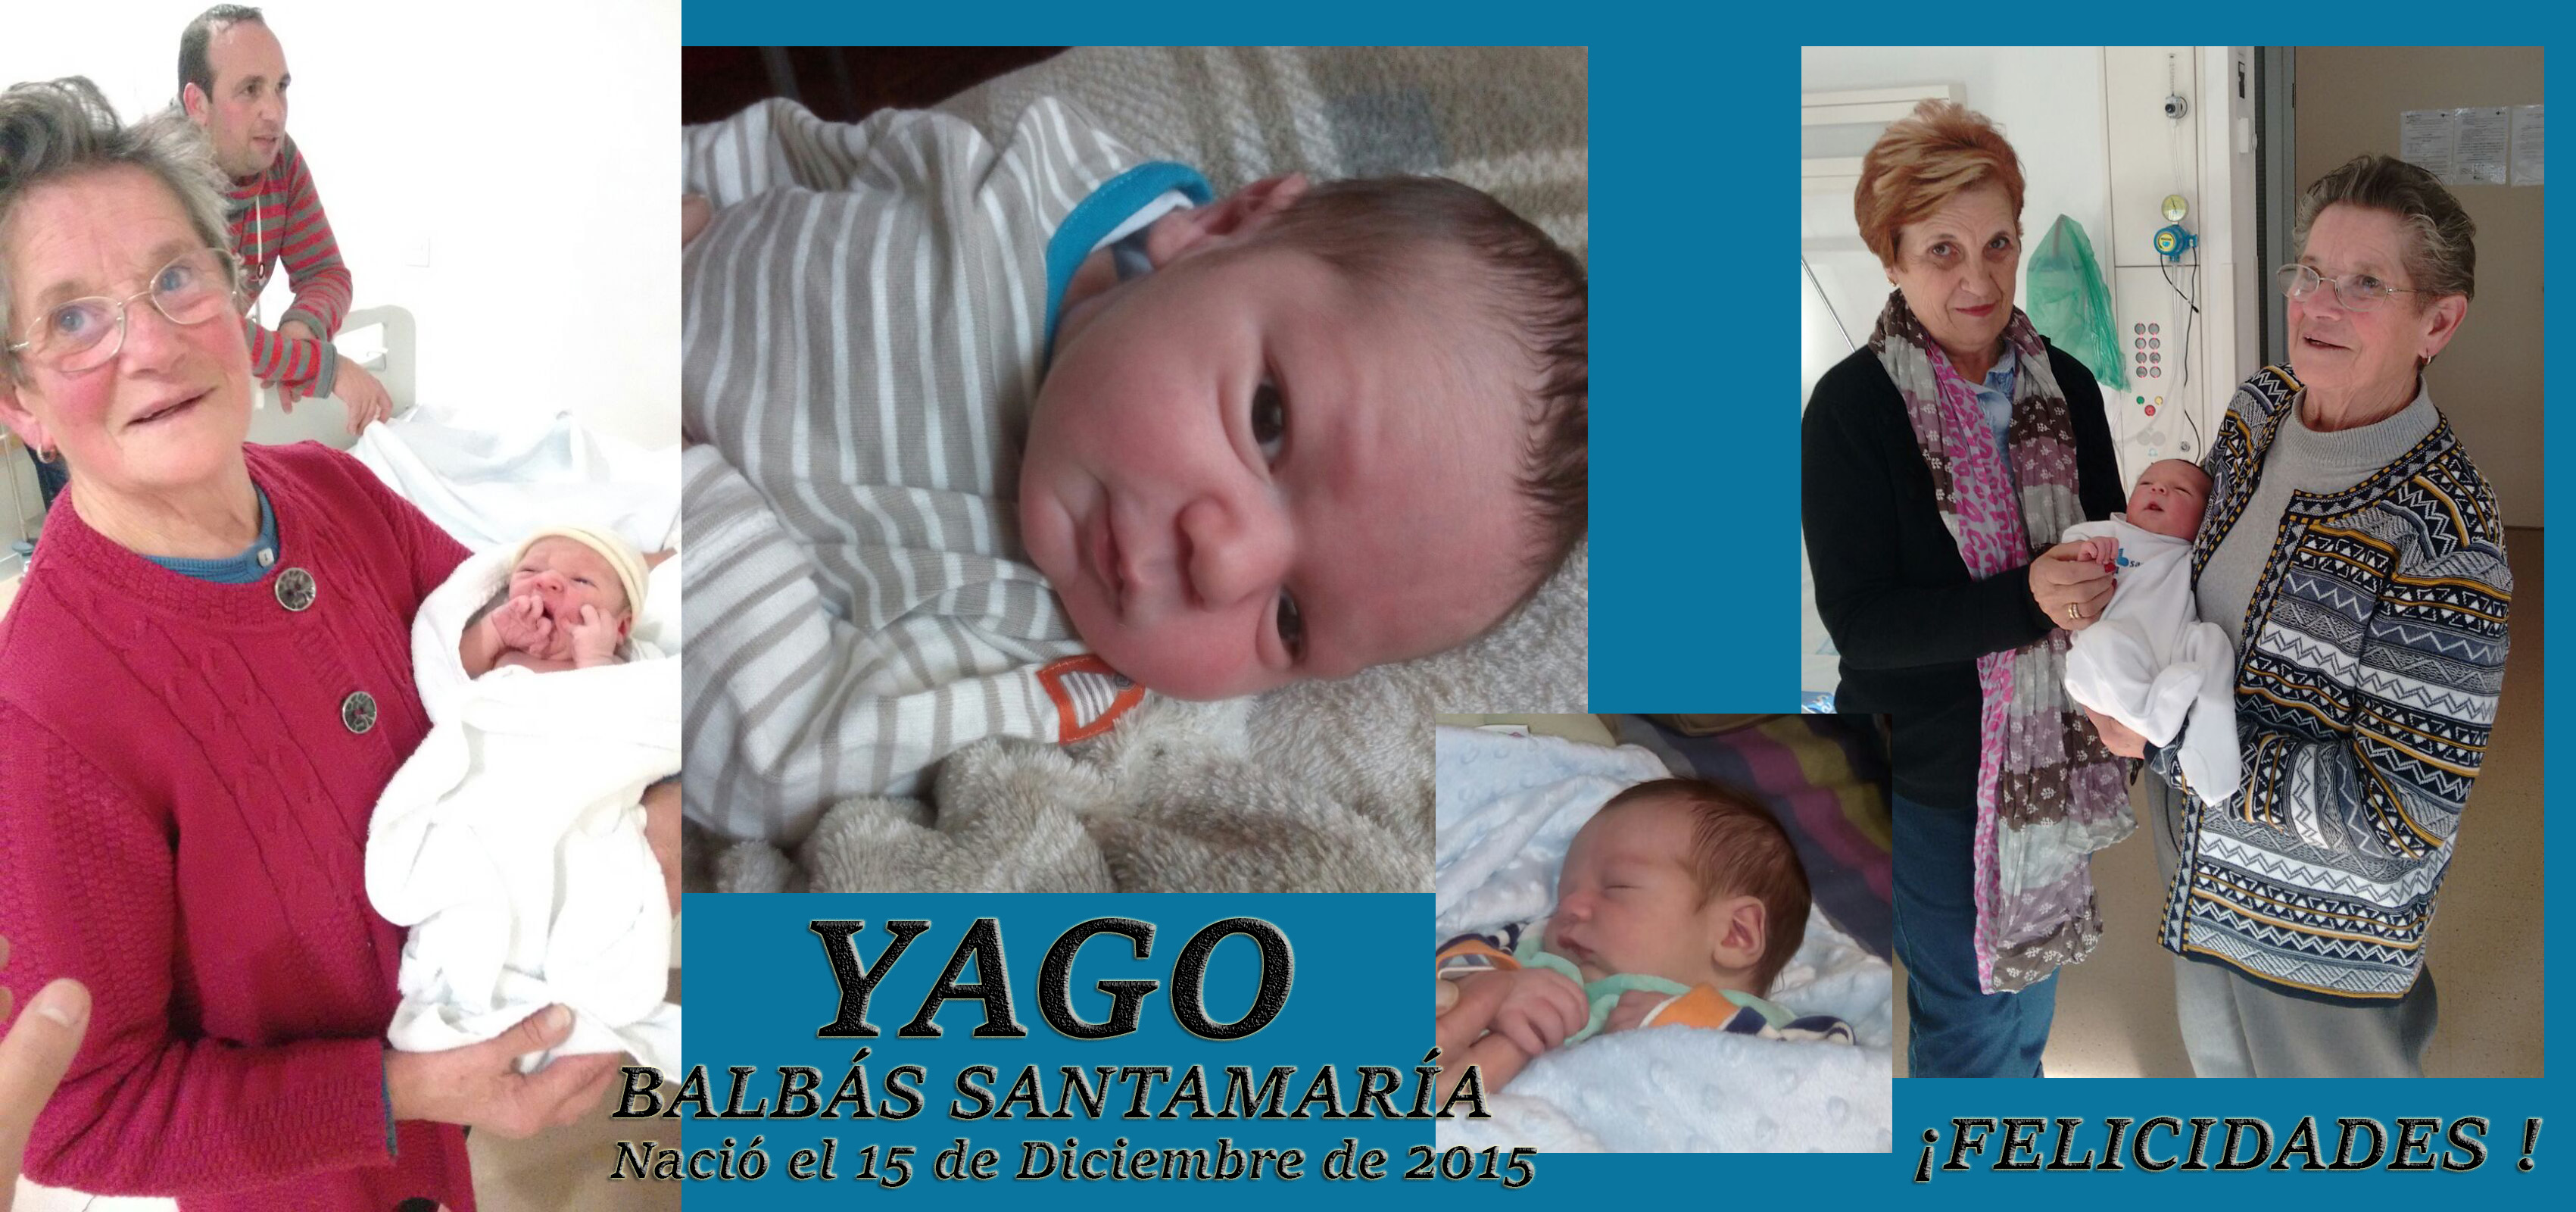 YAGO BALBÁS SANTARMARÍA, nació el 15-12-2015